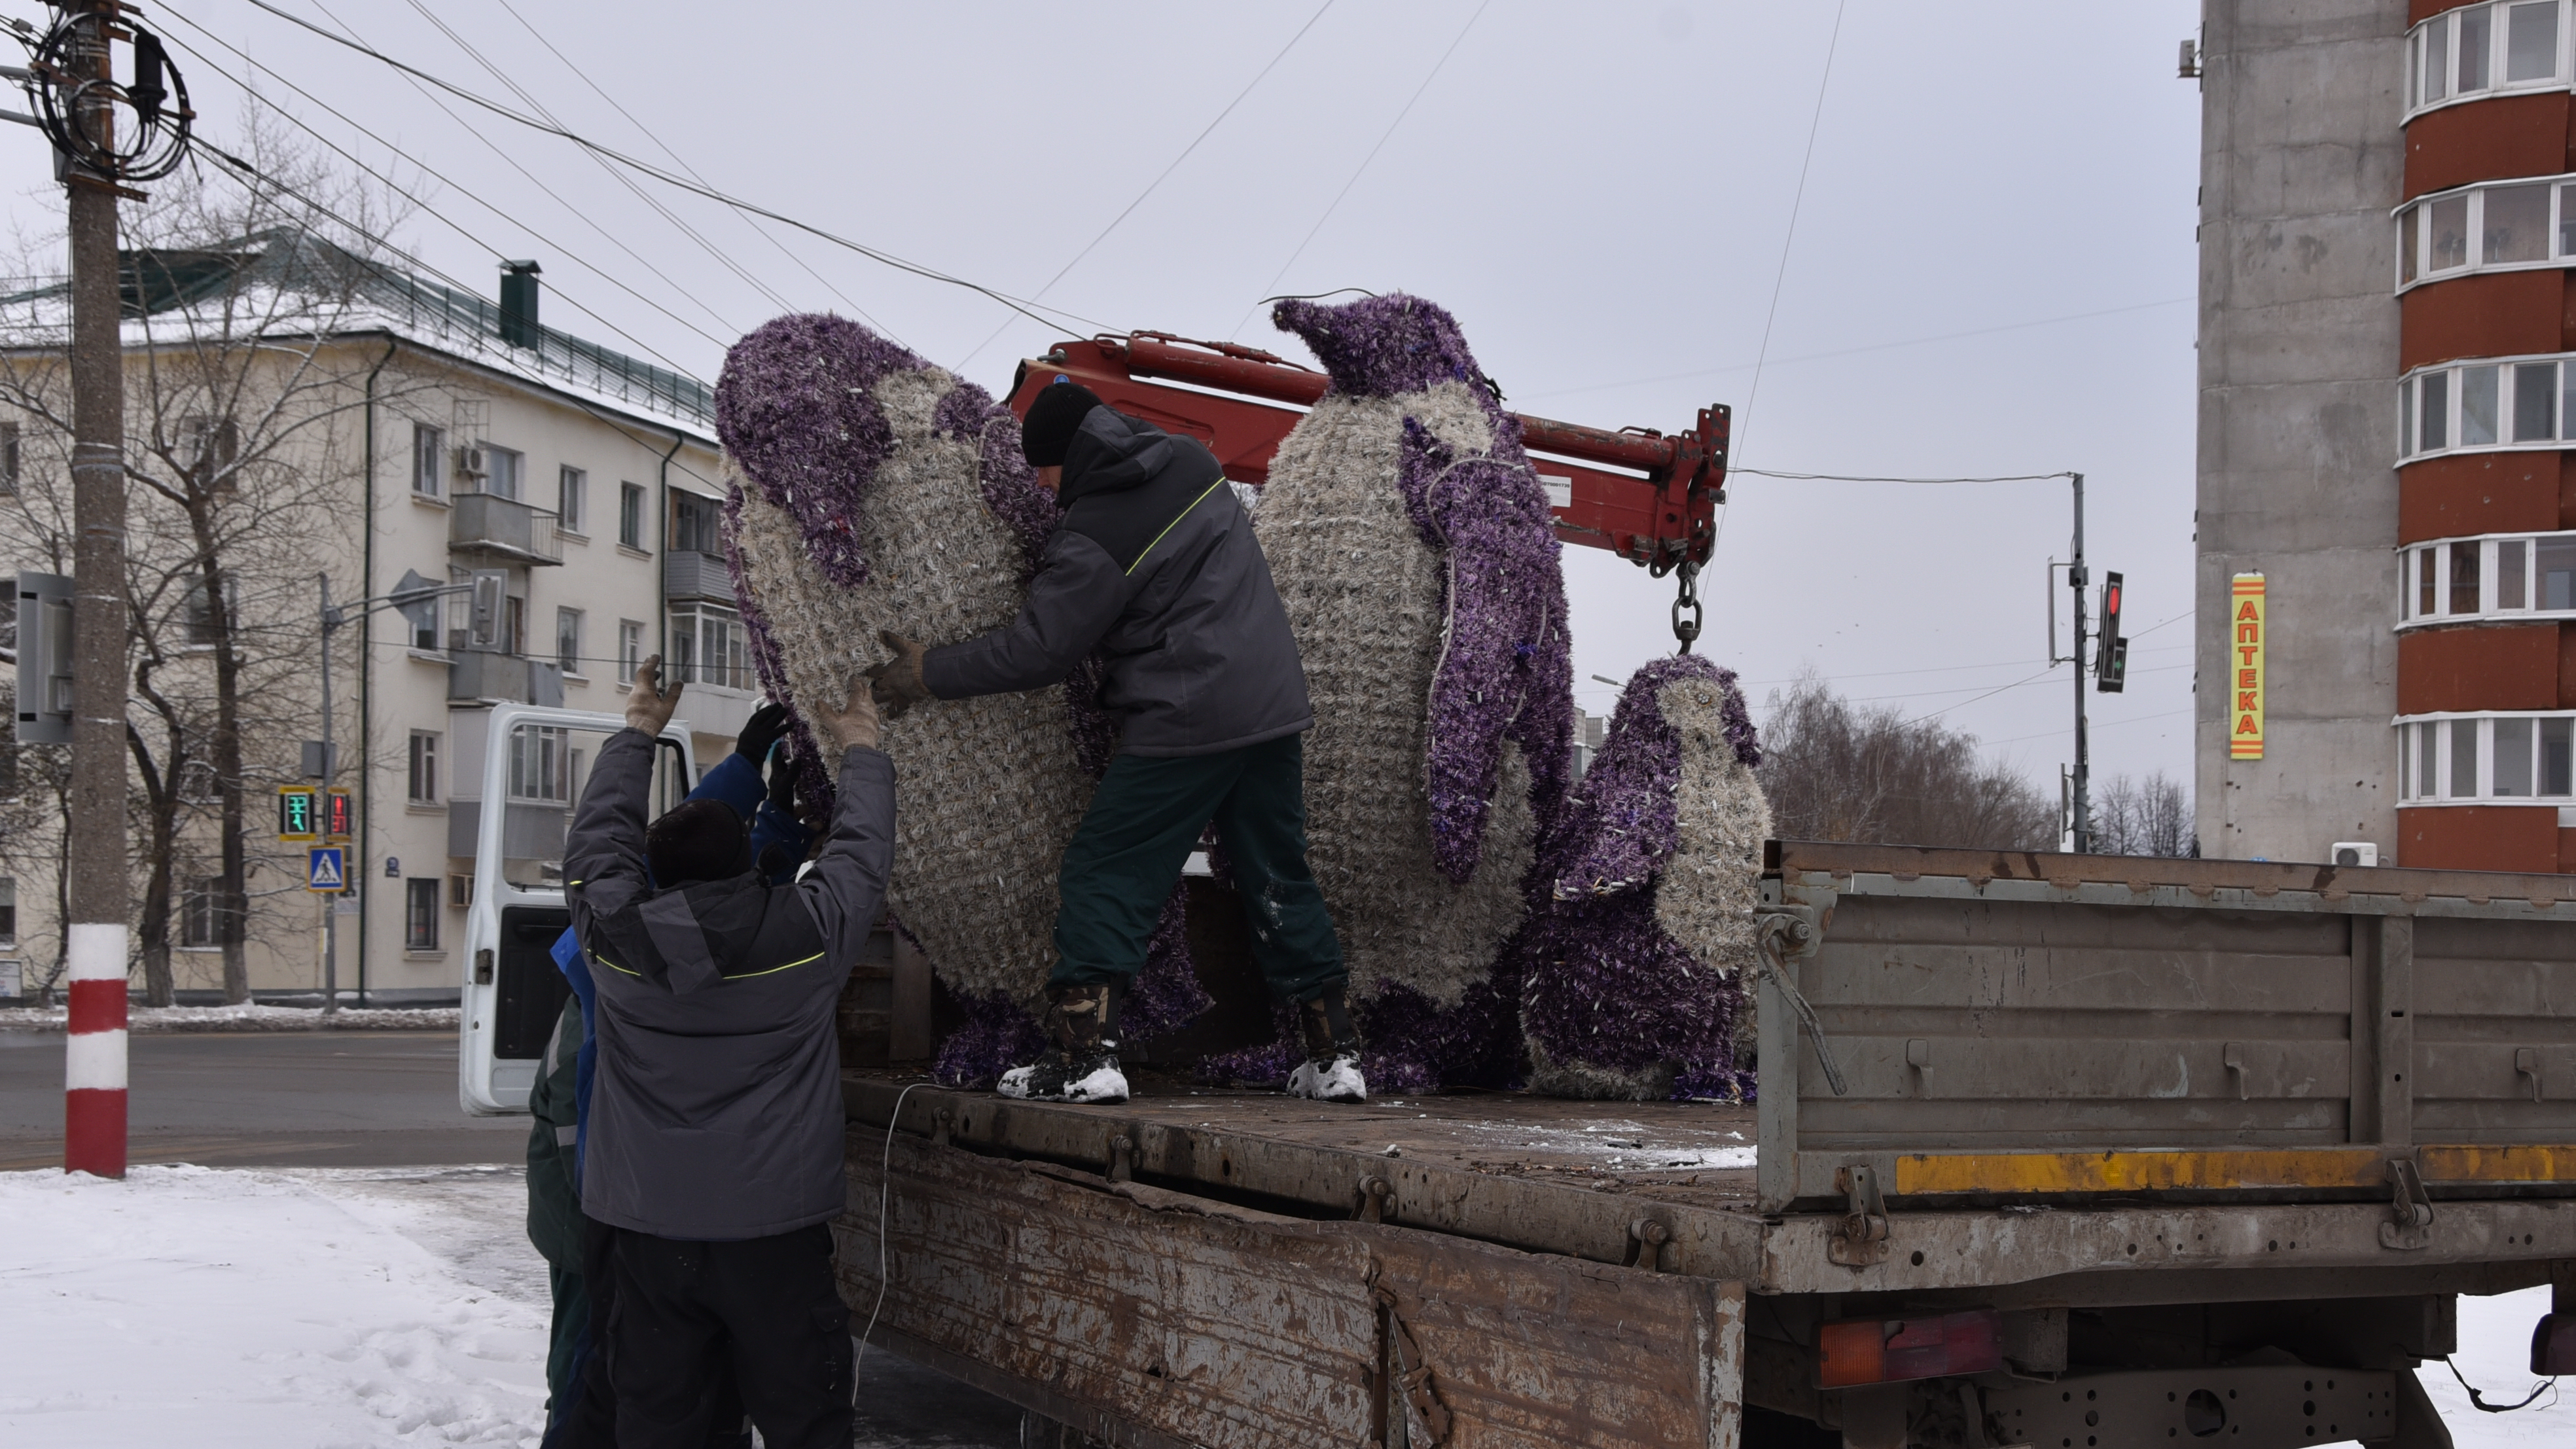 Пингвины, маска, шар. Ульяновск начал преображаться в преддверии Нового года